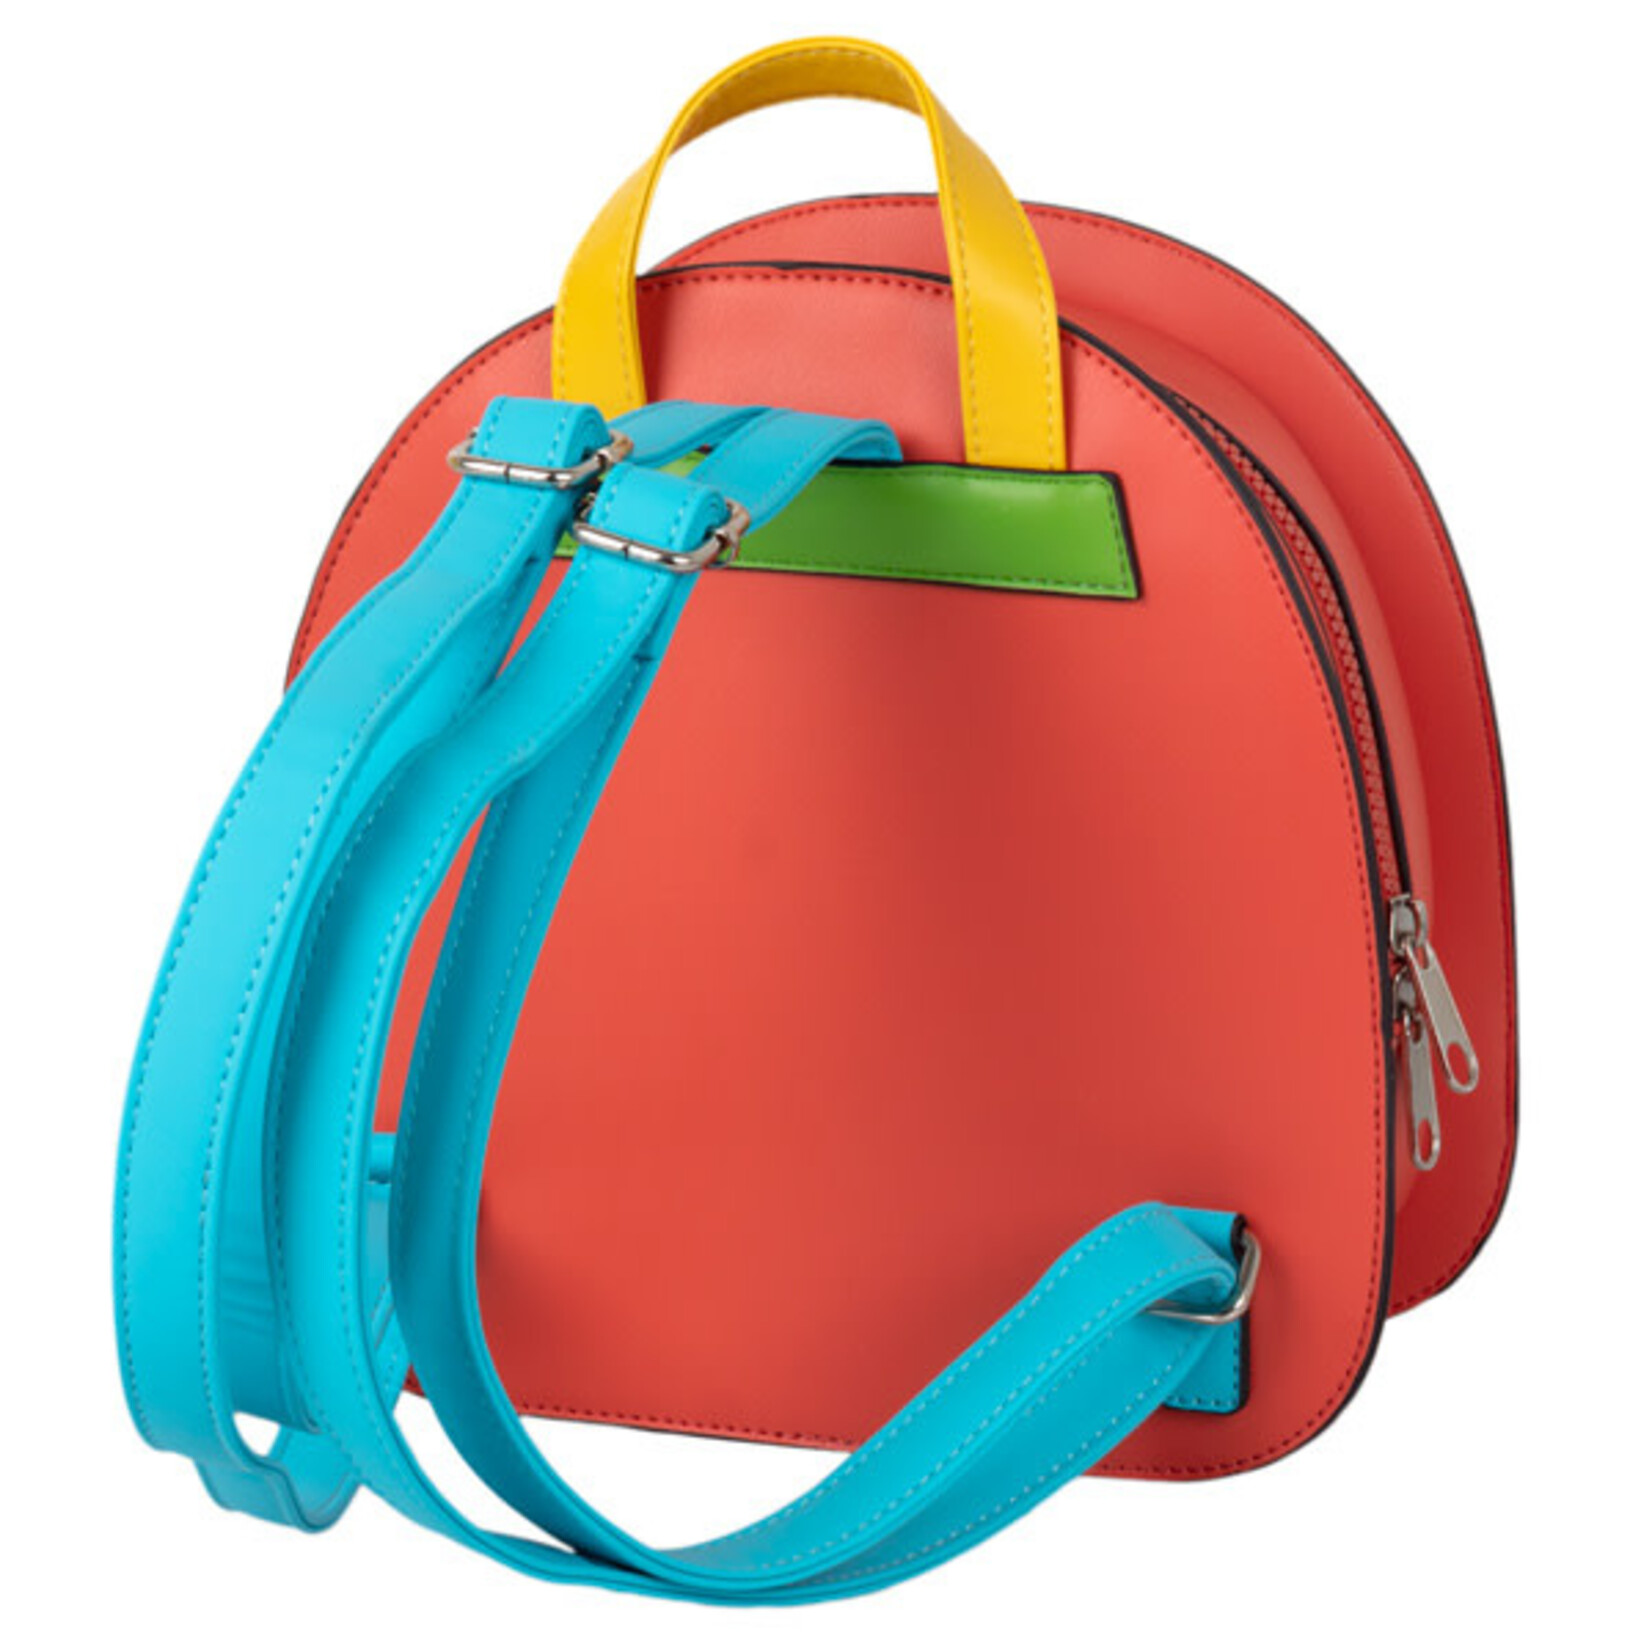 Squishable Mini Rainbow Backpack